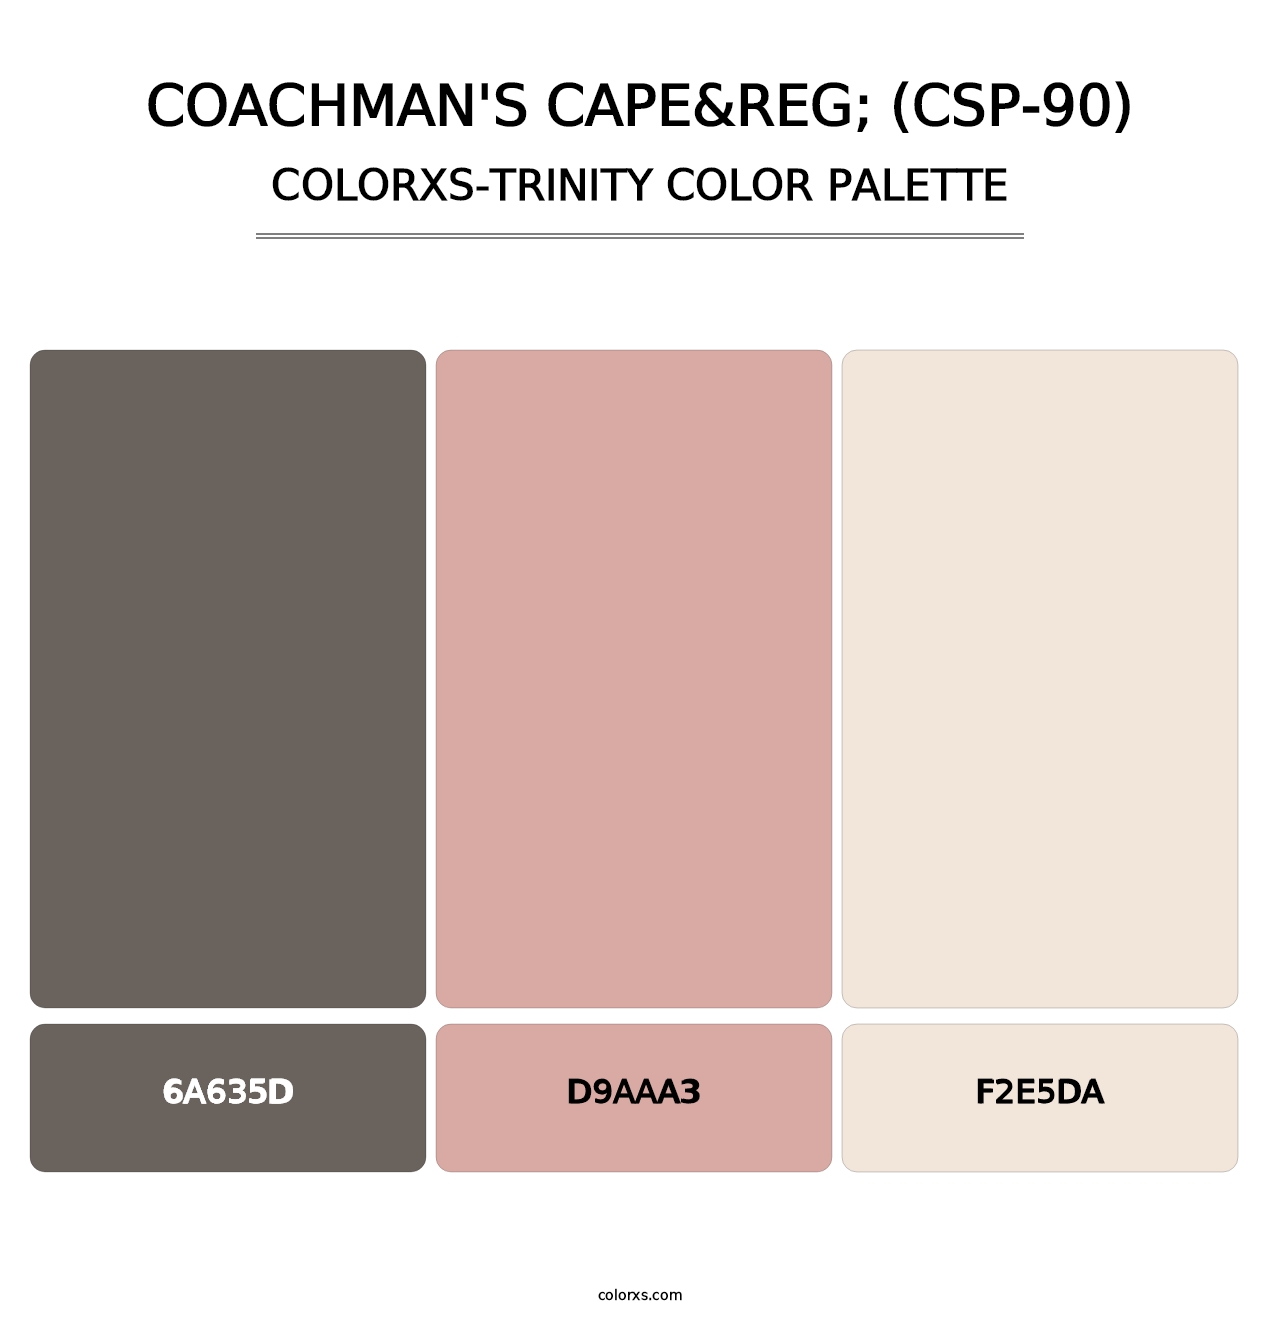 Coachman's Cape&reg; (CSP-90) - Colorxs Trinity Palette